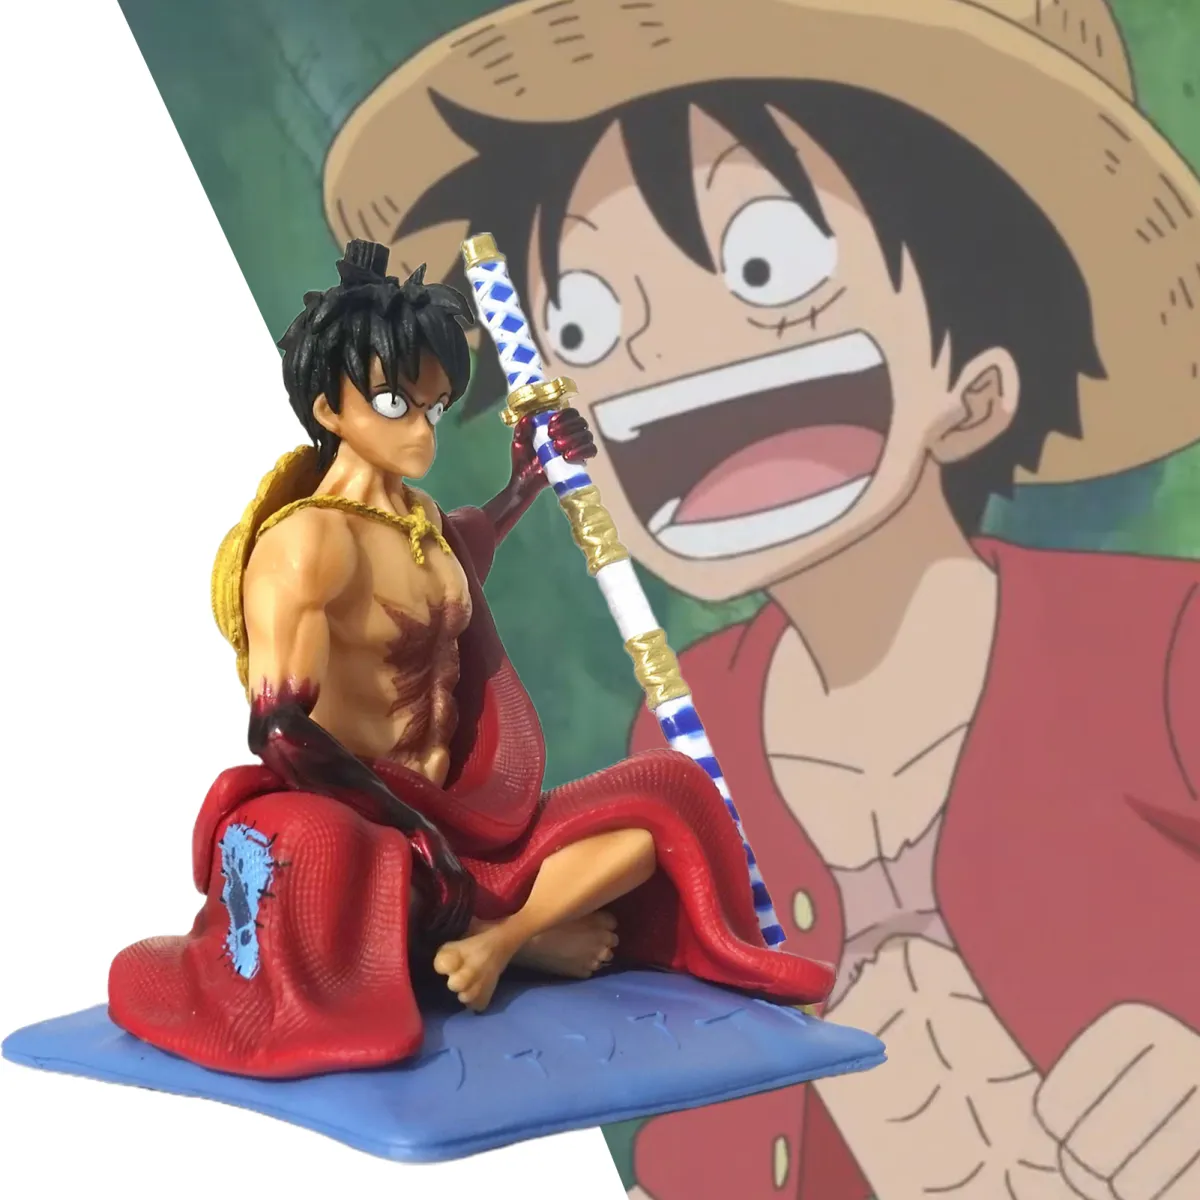 Mô hình đồ chơi mô hình nhân vật One Piece Luffy xuất hiện tinh tế - Với kỹ thuật sản xuất tinh xảo, mô hình đồ chơi nhân vật One Piece Luffy đang chờ bạn tại một cửa hàng gần đó. Với chi tiết độc đáo và sự trung thực đến từng chi tiết, mô hình này chắc chắn sẽ khiến bất kỳ fan hâm mộ của One Piece cũng phải xuýt xoa. Hãy đến và trải nghiệm sự tinh tế của mô hình đồ chơi này.